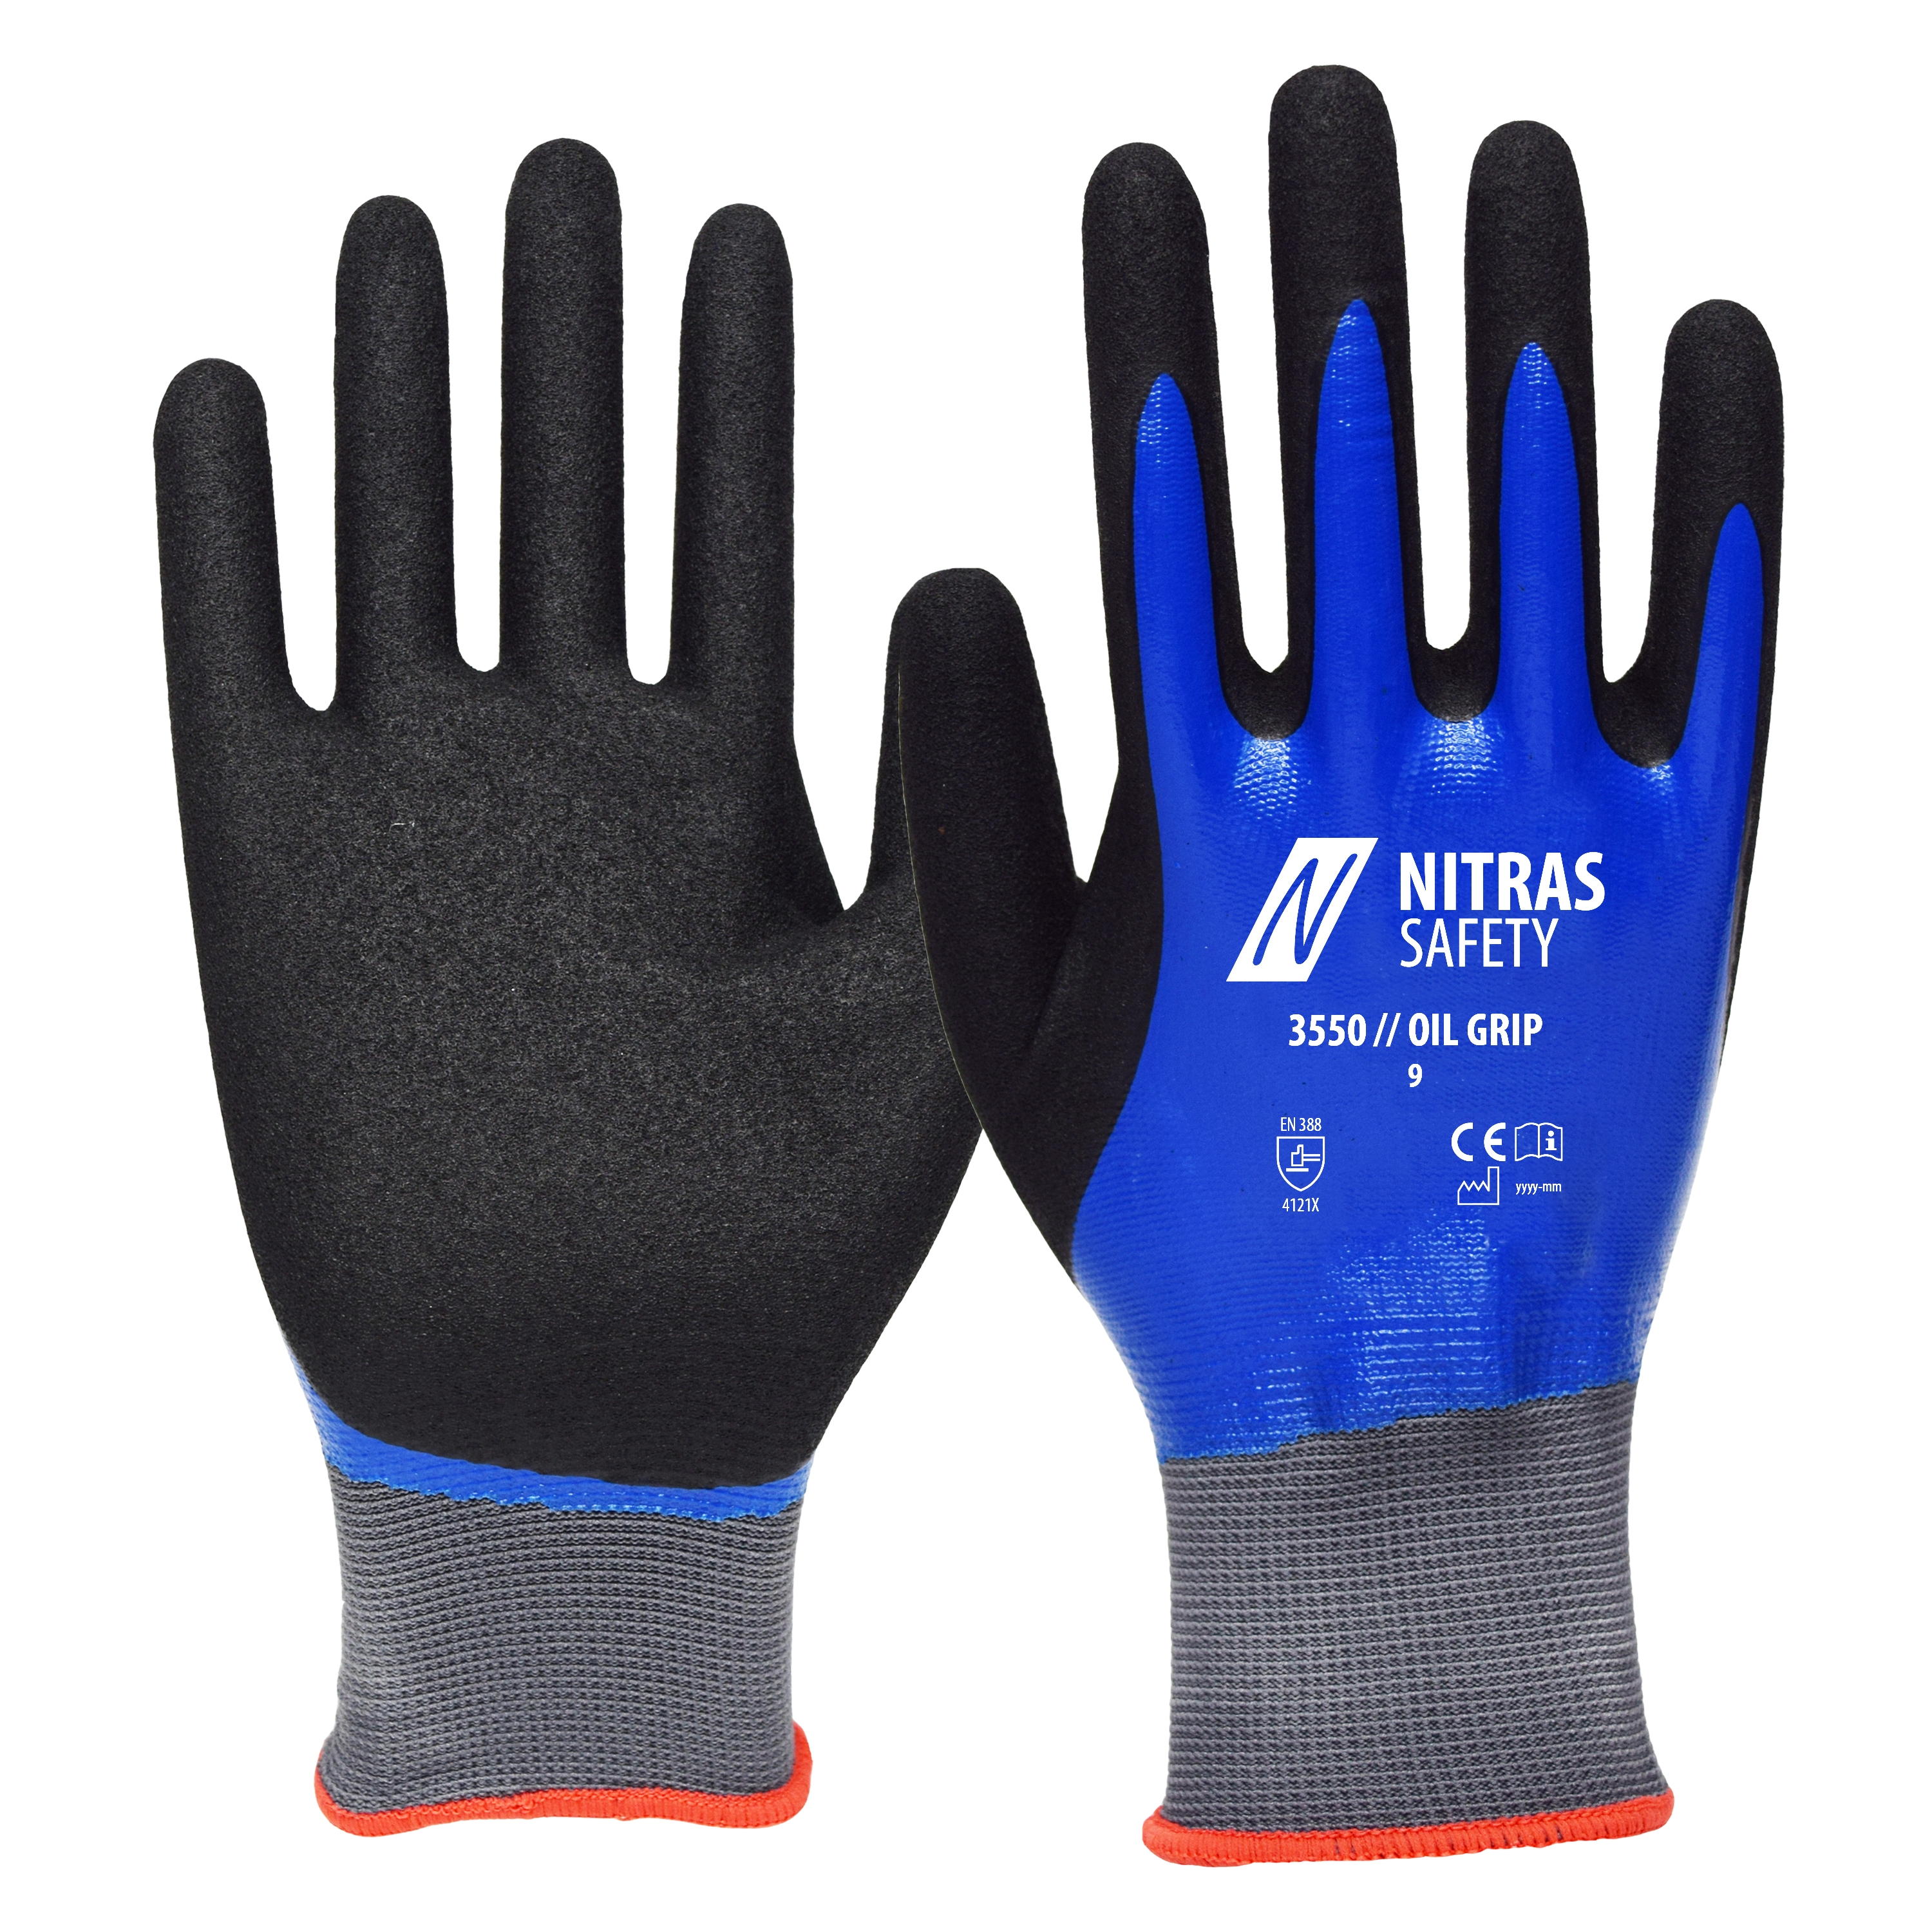 NITRAS OIL GRIP Nylon Gloves